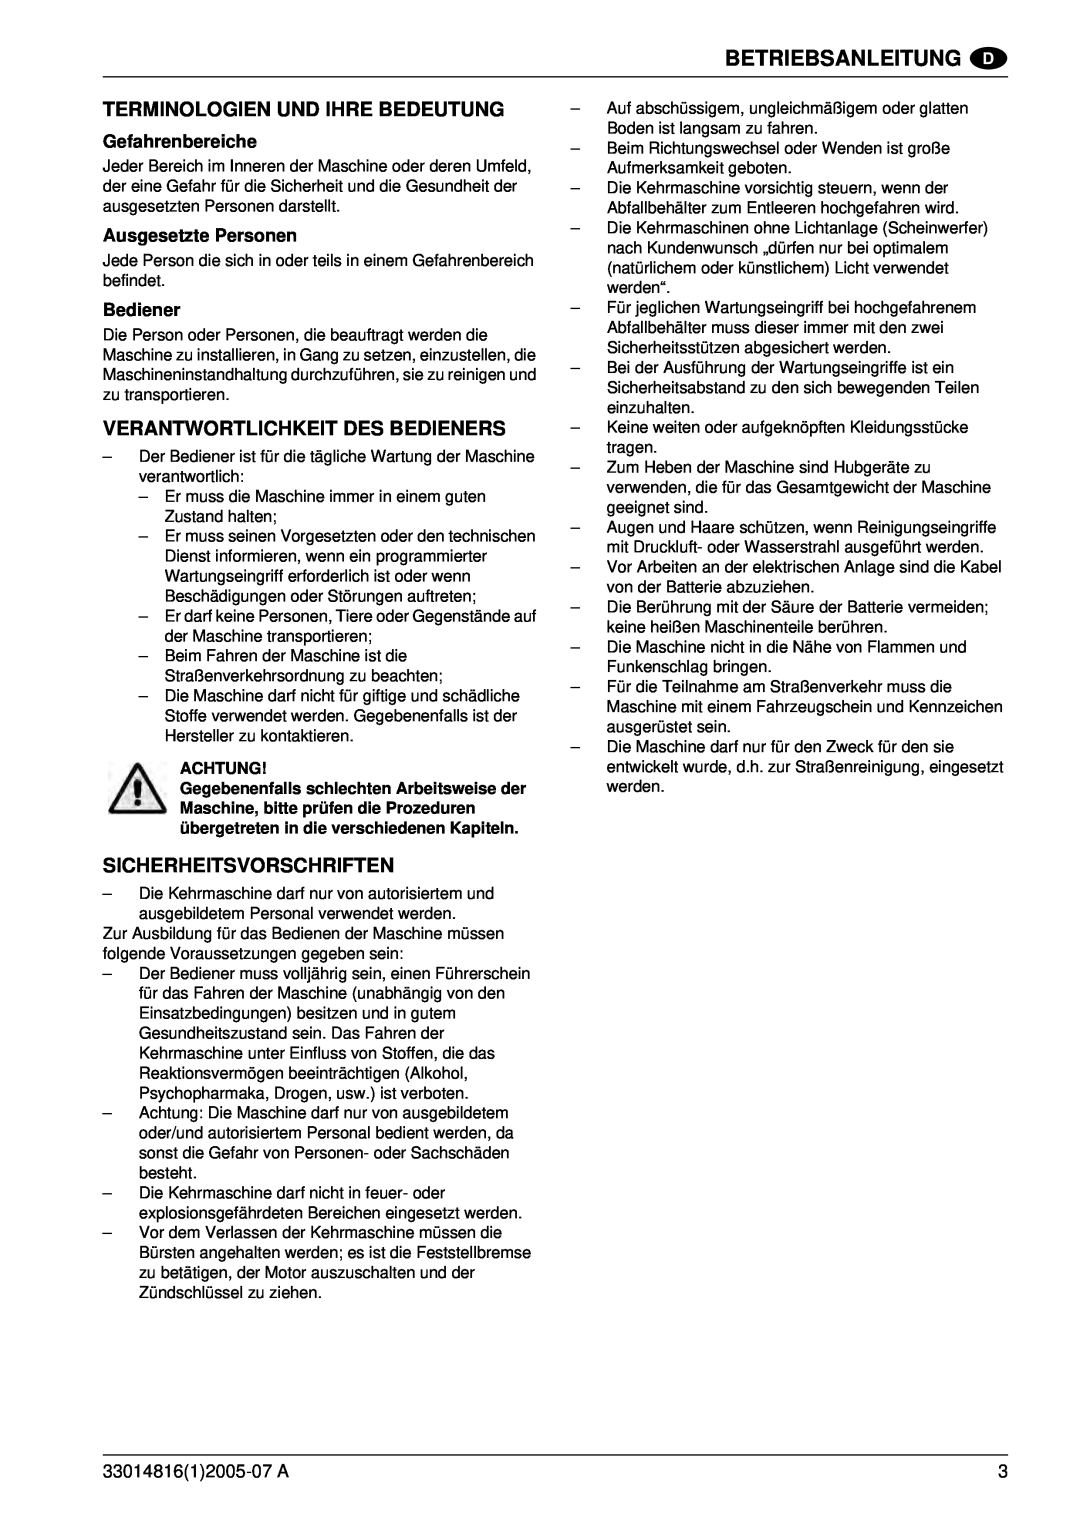 Nilfisk-ALTO SR 1700 2WD B Terminologien Und Ihre Bedeutung, Verantwortlichkeit Des Bedieners, Sicherheitsvorschriften 